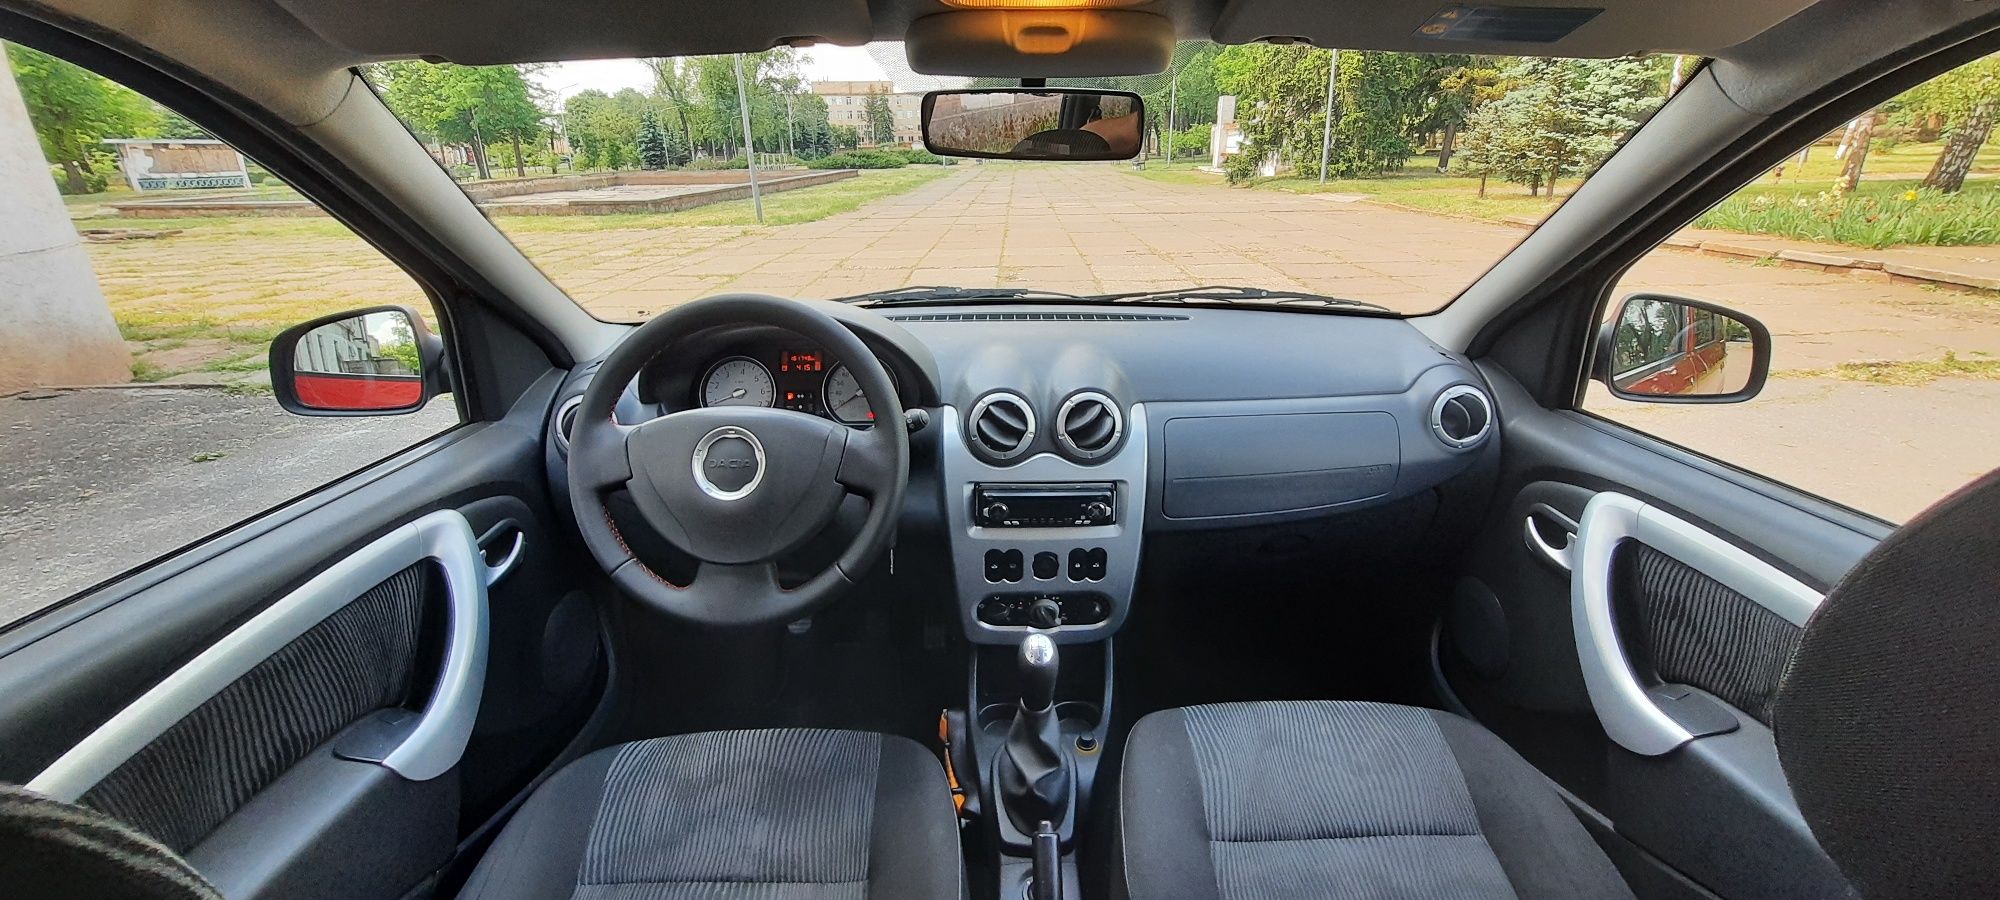 Продам Dacia logan mcw 1.5dci 2010г.в laureat